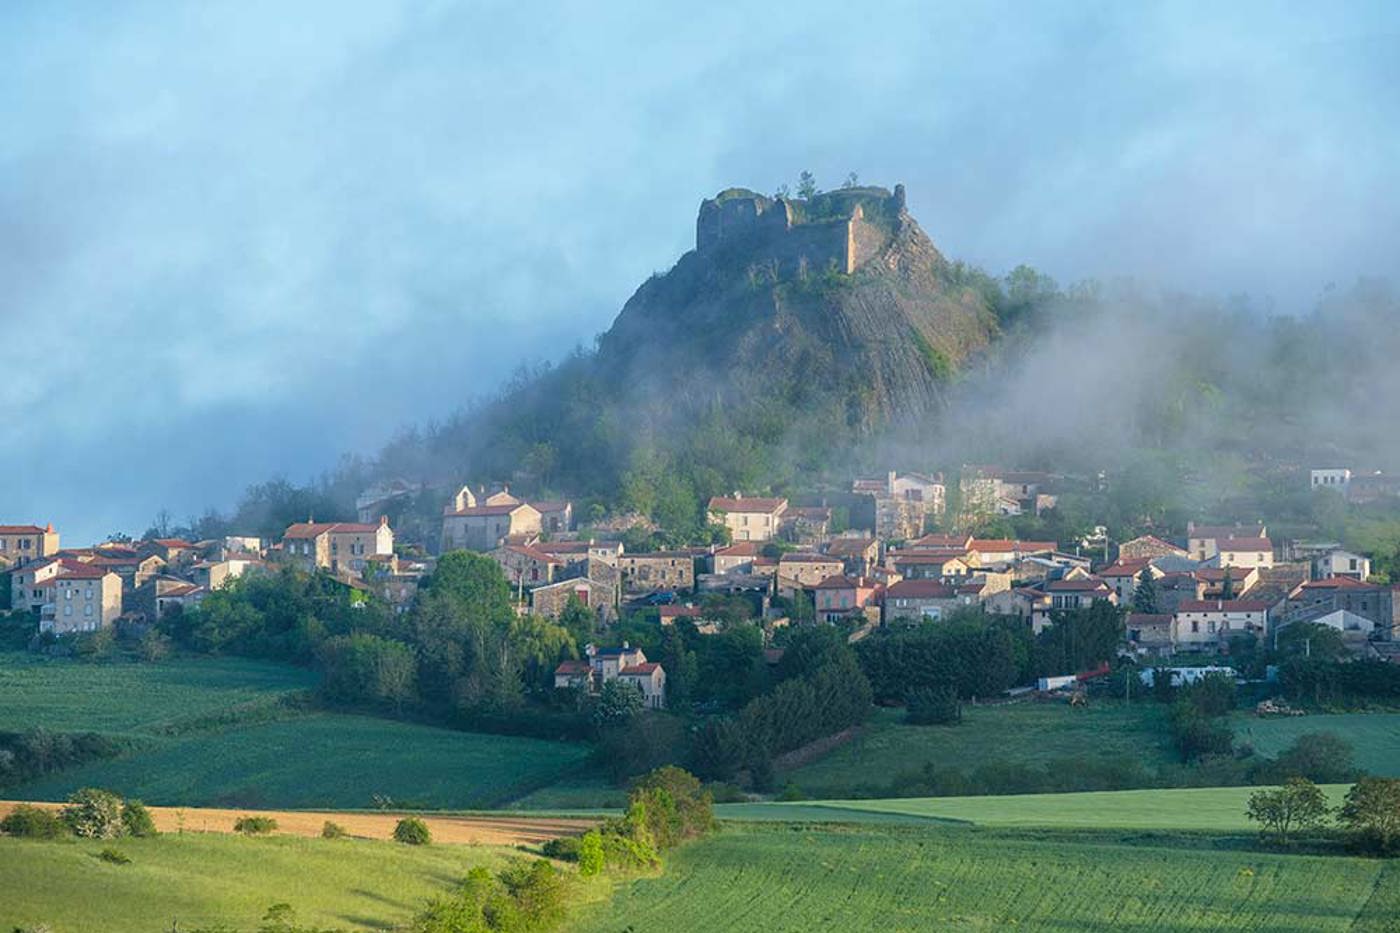 Das Städtchen Buron liegt mitten in der Vulkanlandschaft der Auvergne, 120 km westlich von Lyon. © Christian Guy/mauritius